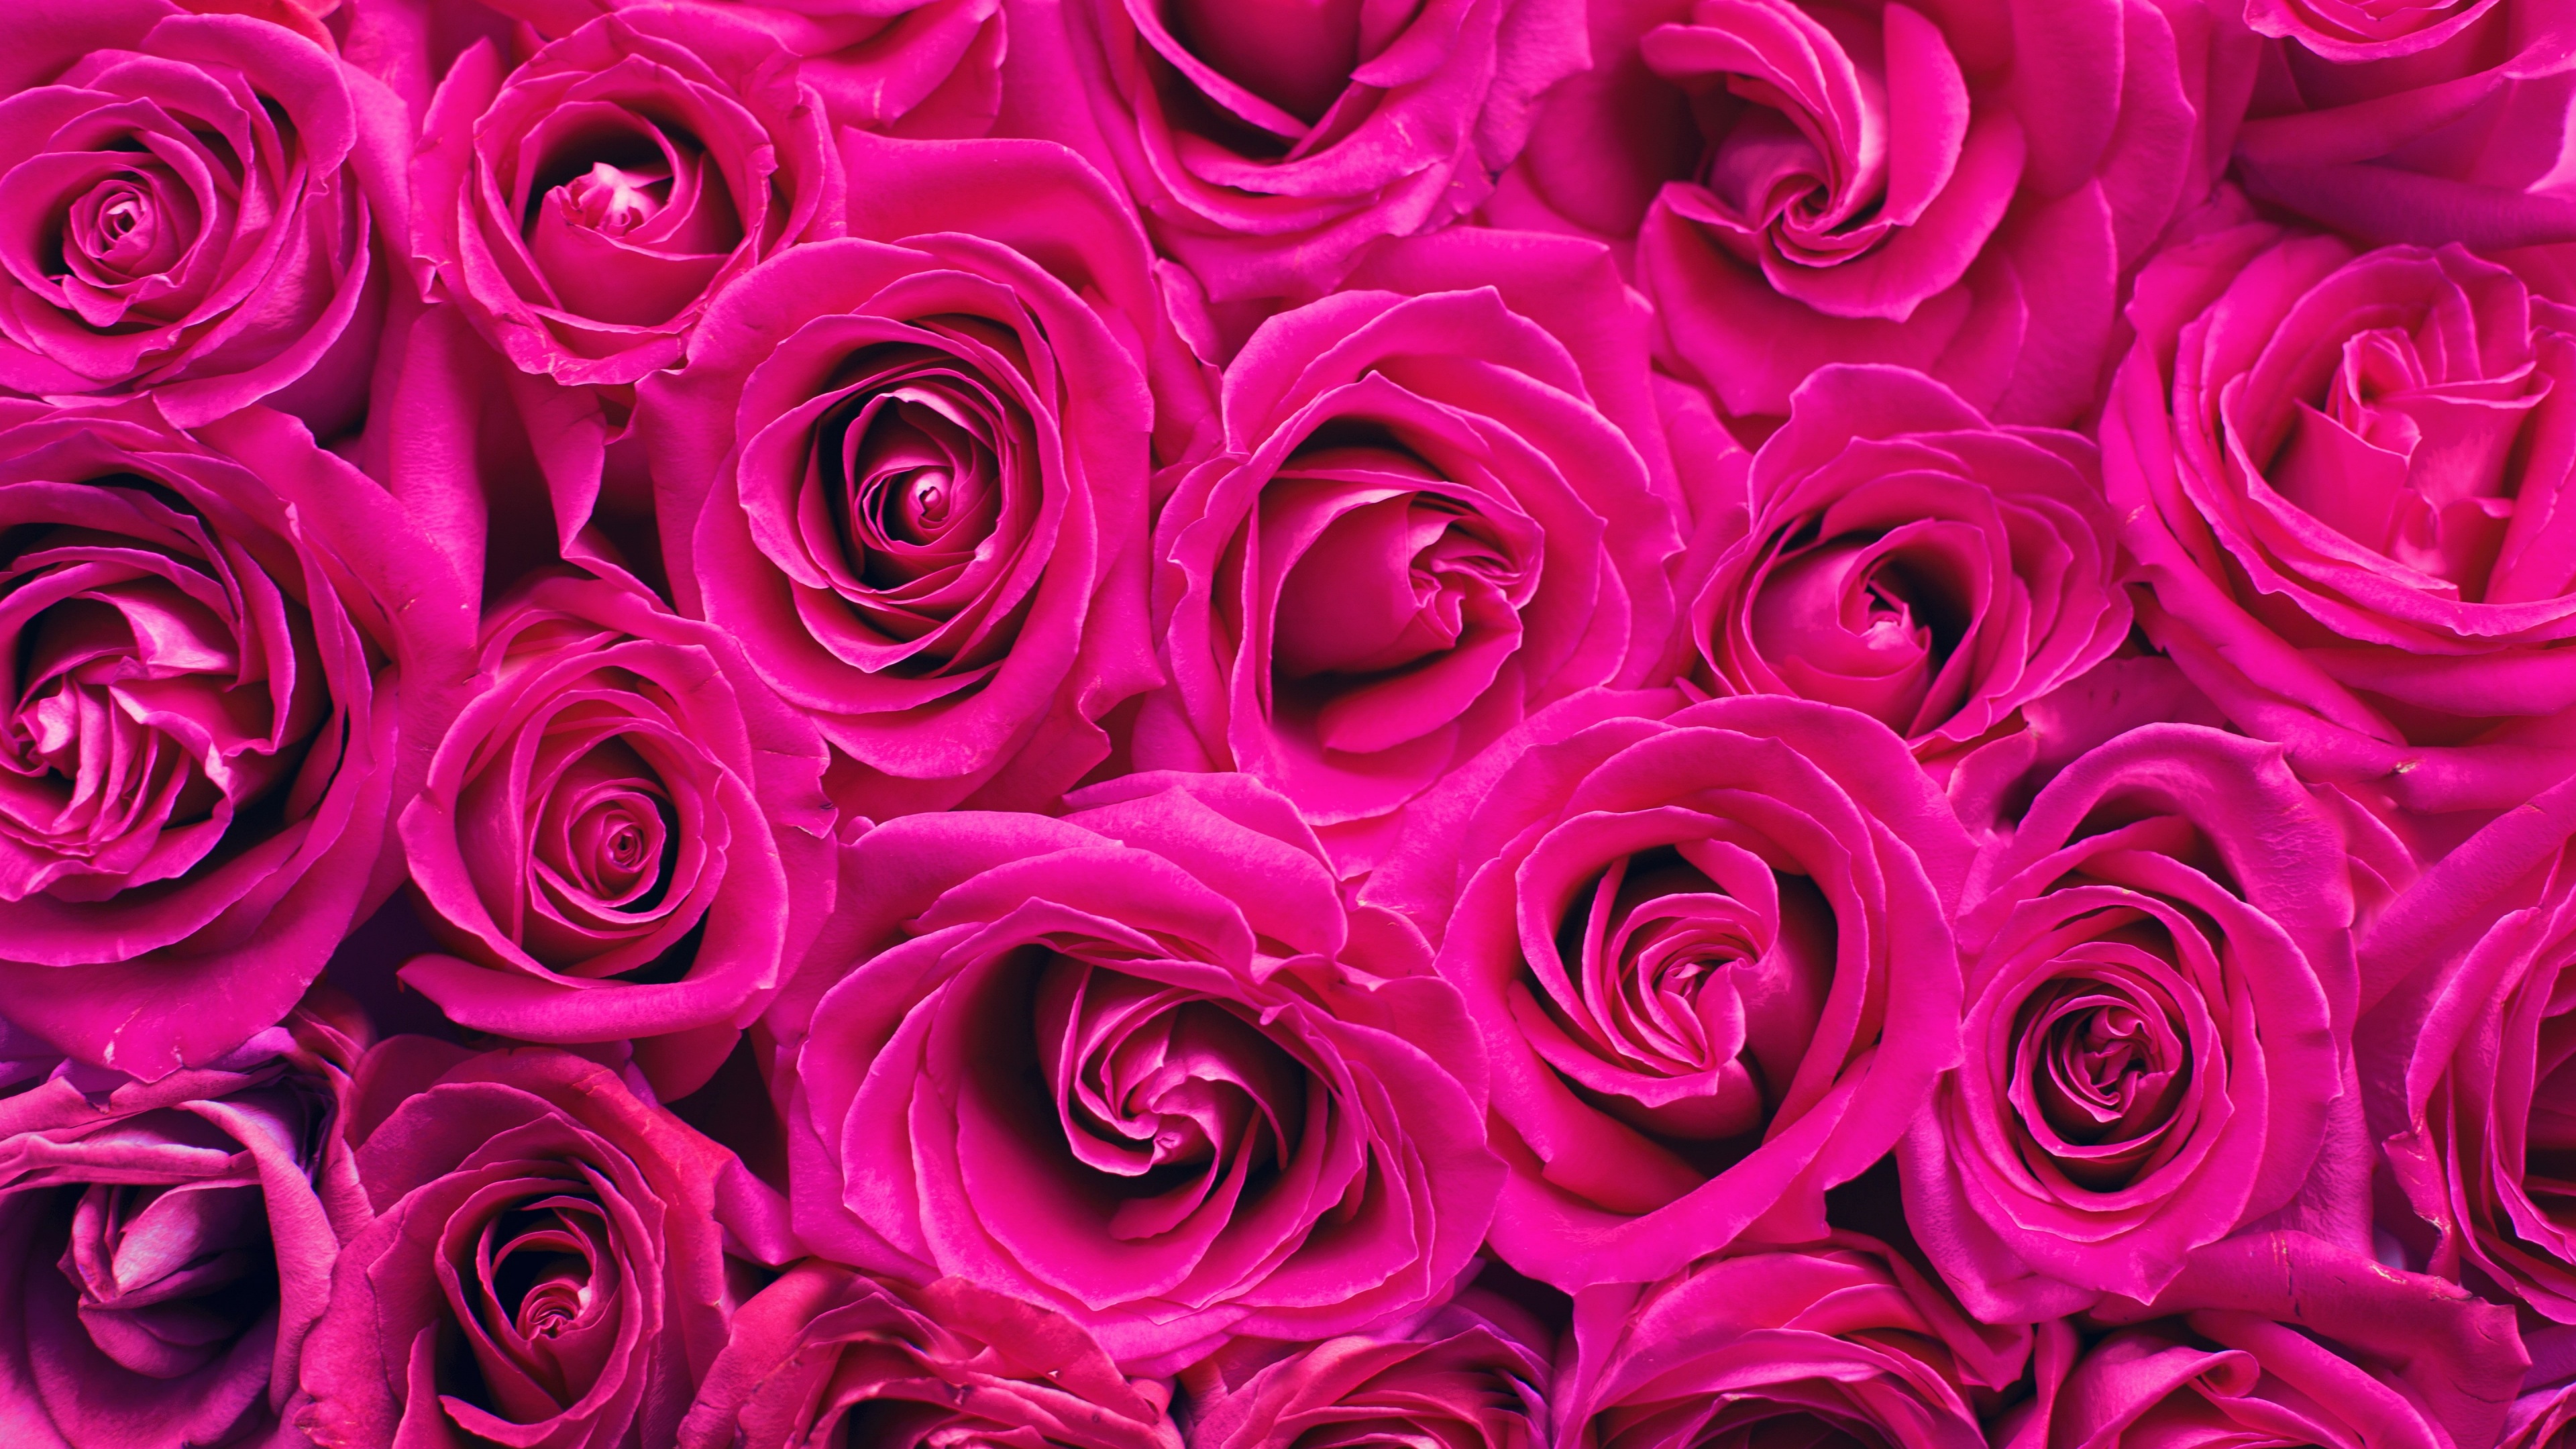 Hoa hồng màu hồng là một biểu tượng cho sự lãng mạn, tình yêu và sự quý giá. Hãy xem hình ảnh liên quan để chiêm ngưỡng vẻ đẹp tinh khôi cùng mùi hương thơm ngát của những bông hoa hồng màu hồng đầy cất giữ những trải nghiệm đáng nhớ trong đời.